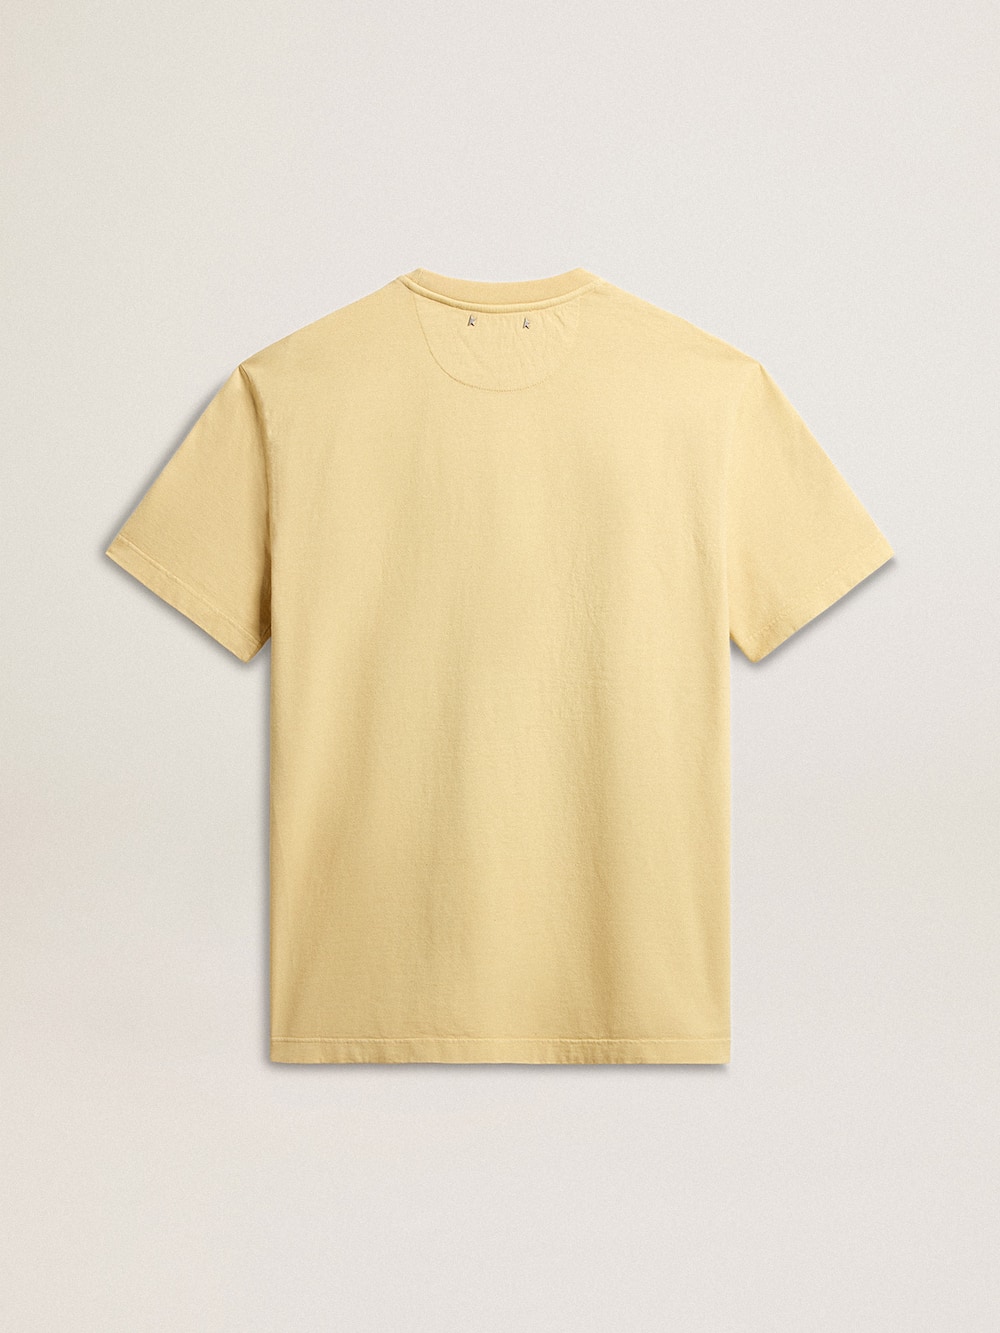 Golden Goose - T-shirt homme en coton jaune pâle avec inscription décolorée in 